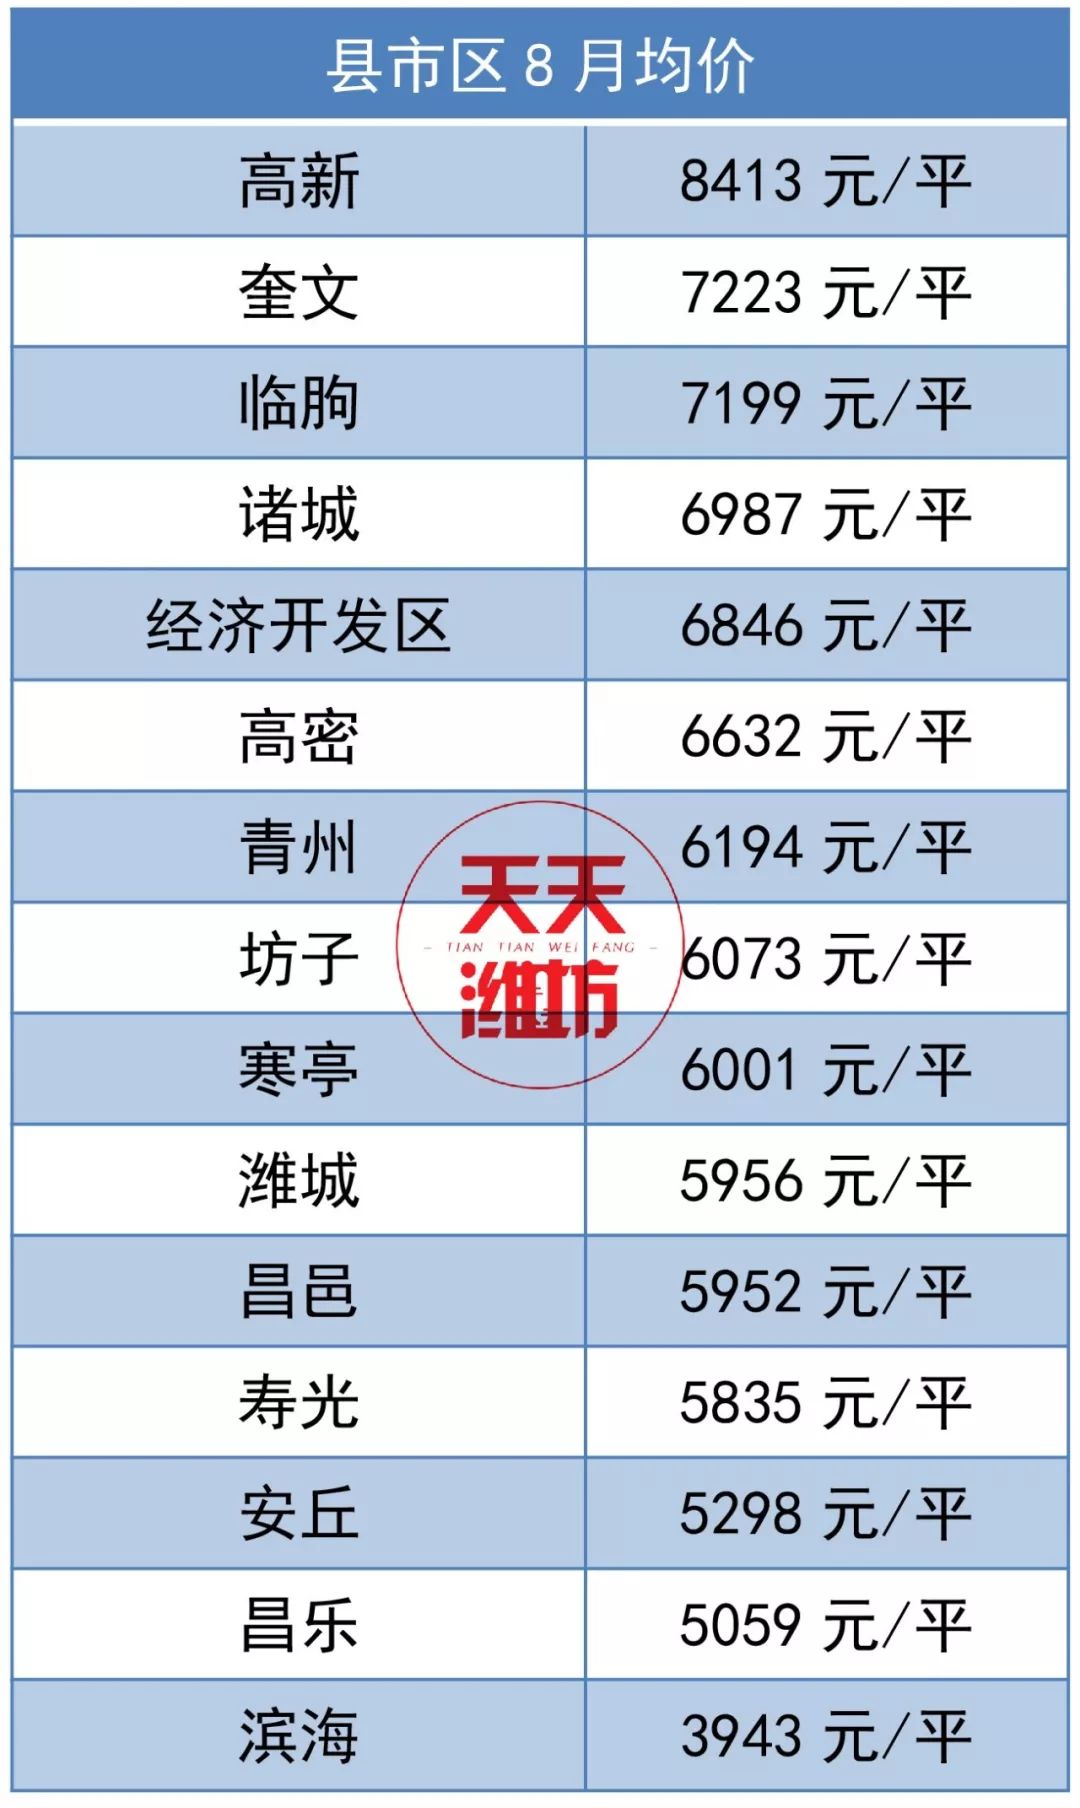 关注丨青州8月房价新鲜出炉,均价